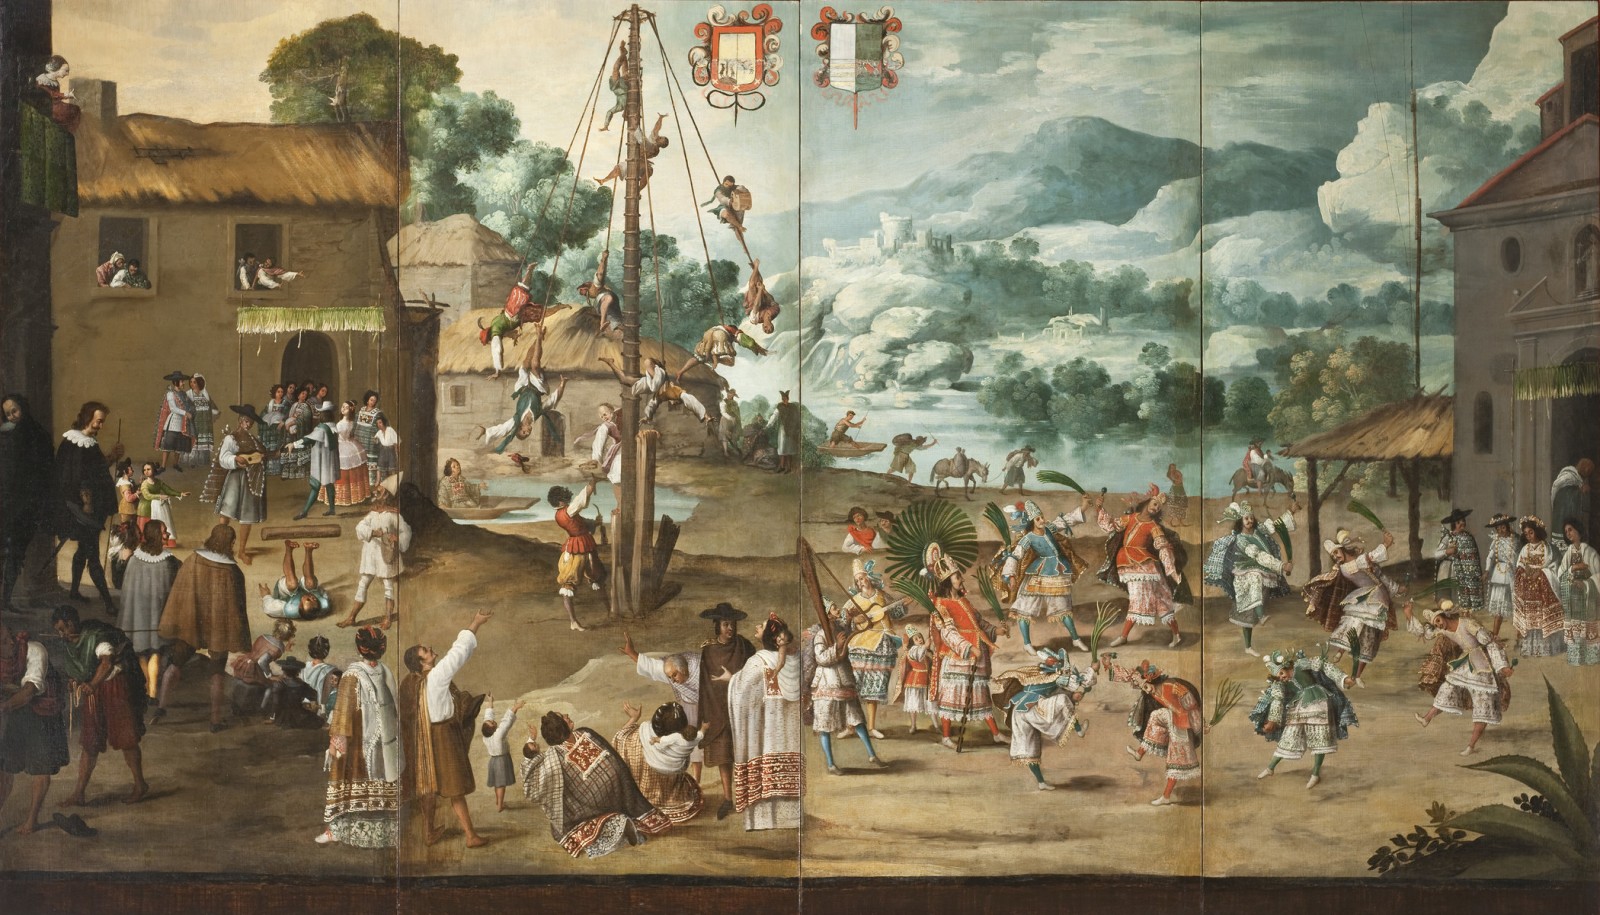 Image: Unknown, Folding Screen with Indian Wedding and Head-Flying Pole (Biombo con desposorio de indios y palo volador) (Detail) (circa 1690)